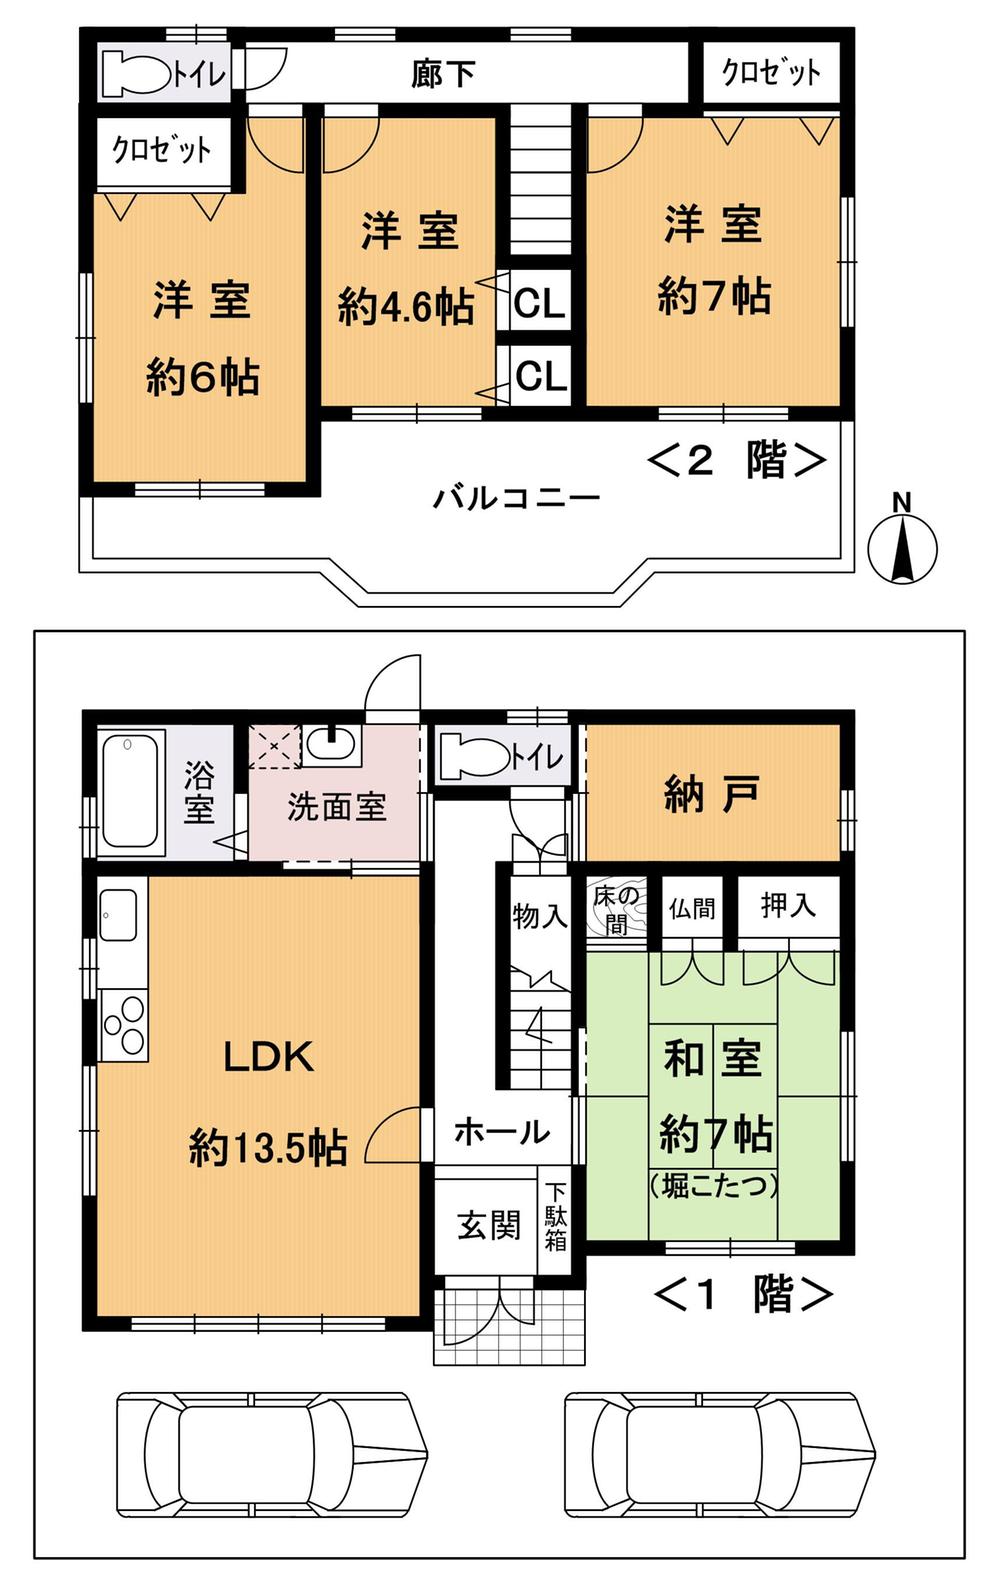 Floor plan. 32,800,000 yen, 4LDK + S (storeroom), Land area 128.79 sq m , Building area 106.4 sq m